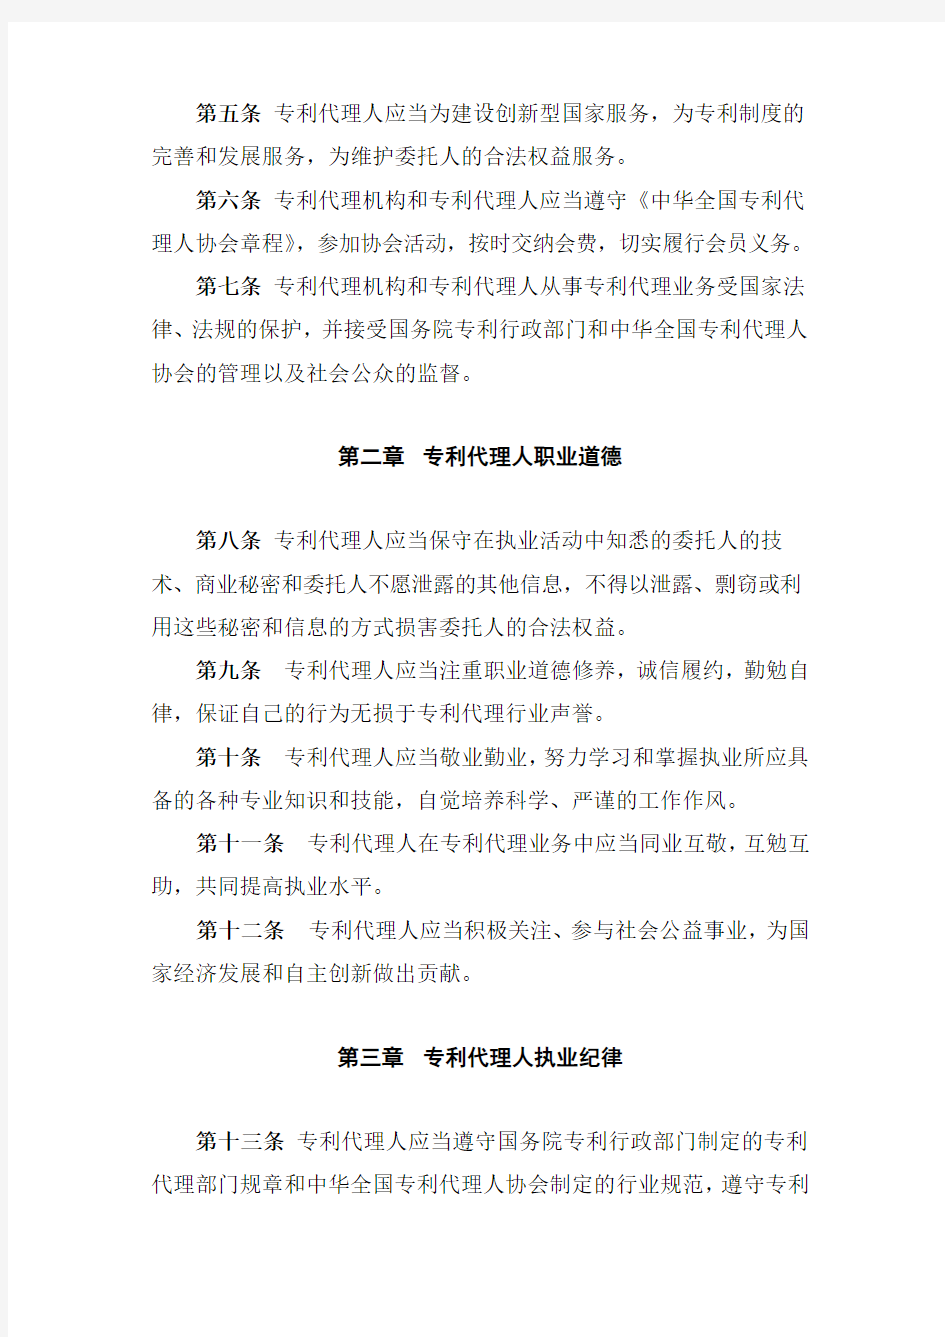 专利代理职业道德与执业纪律规范---中华全国专利代理人协会